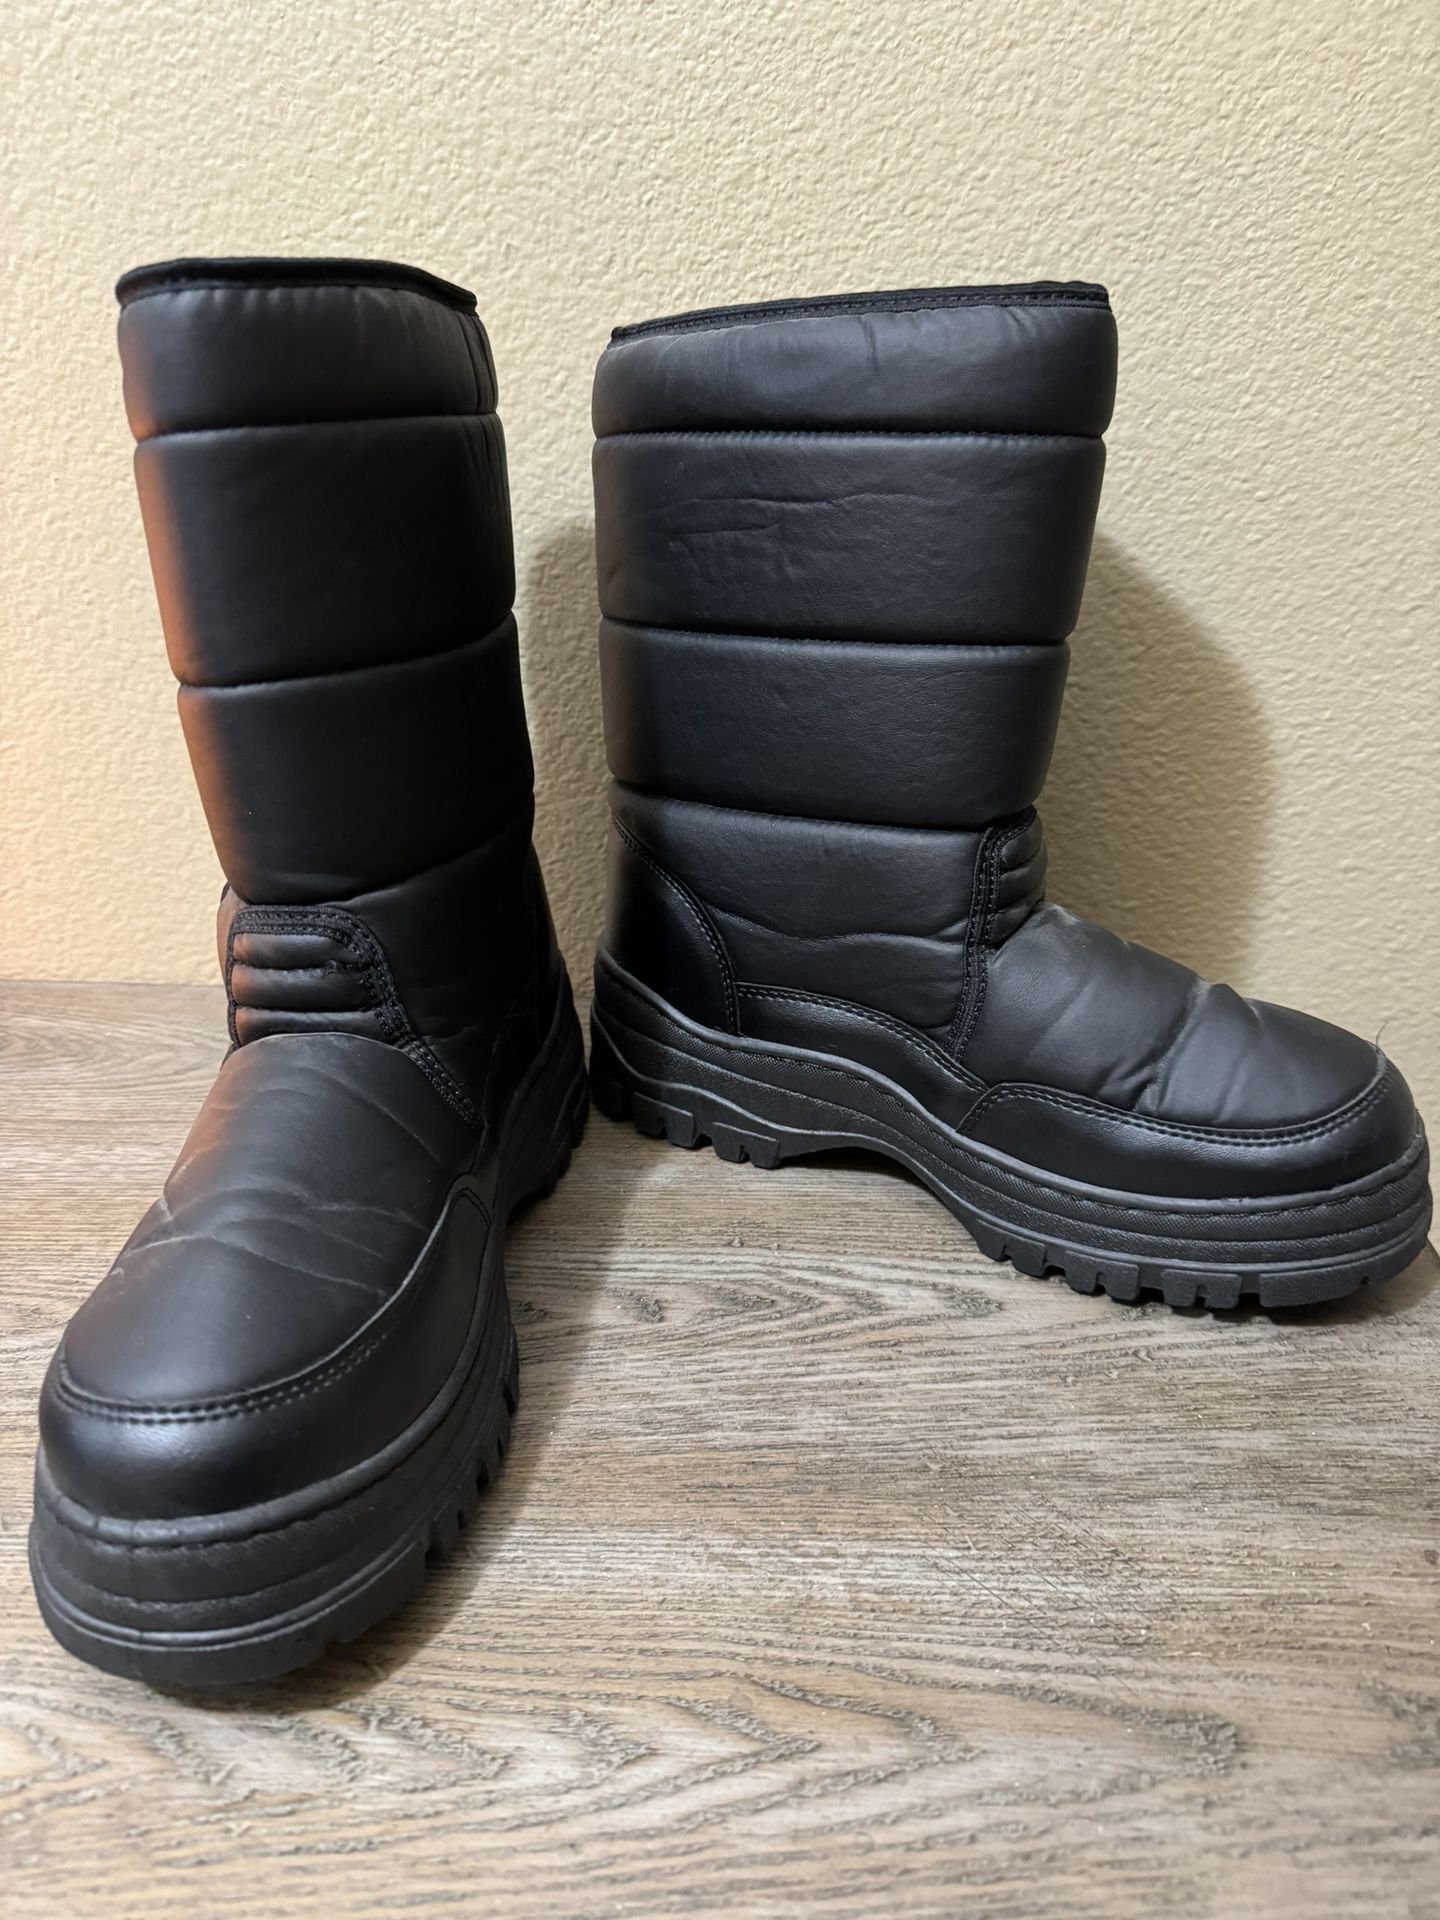 Men’s Snow Boots, Size 10